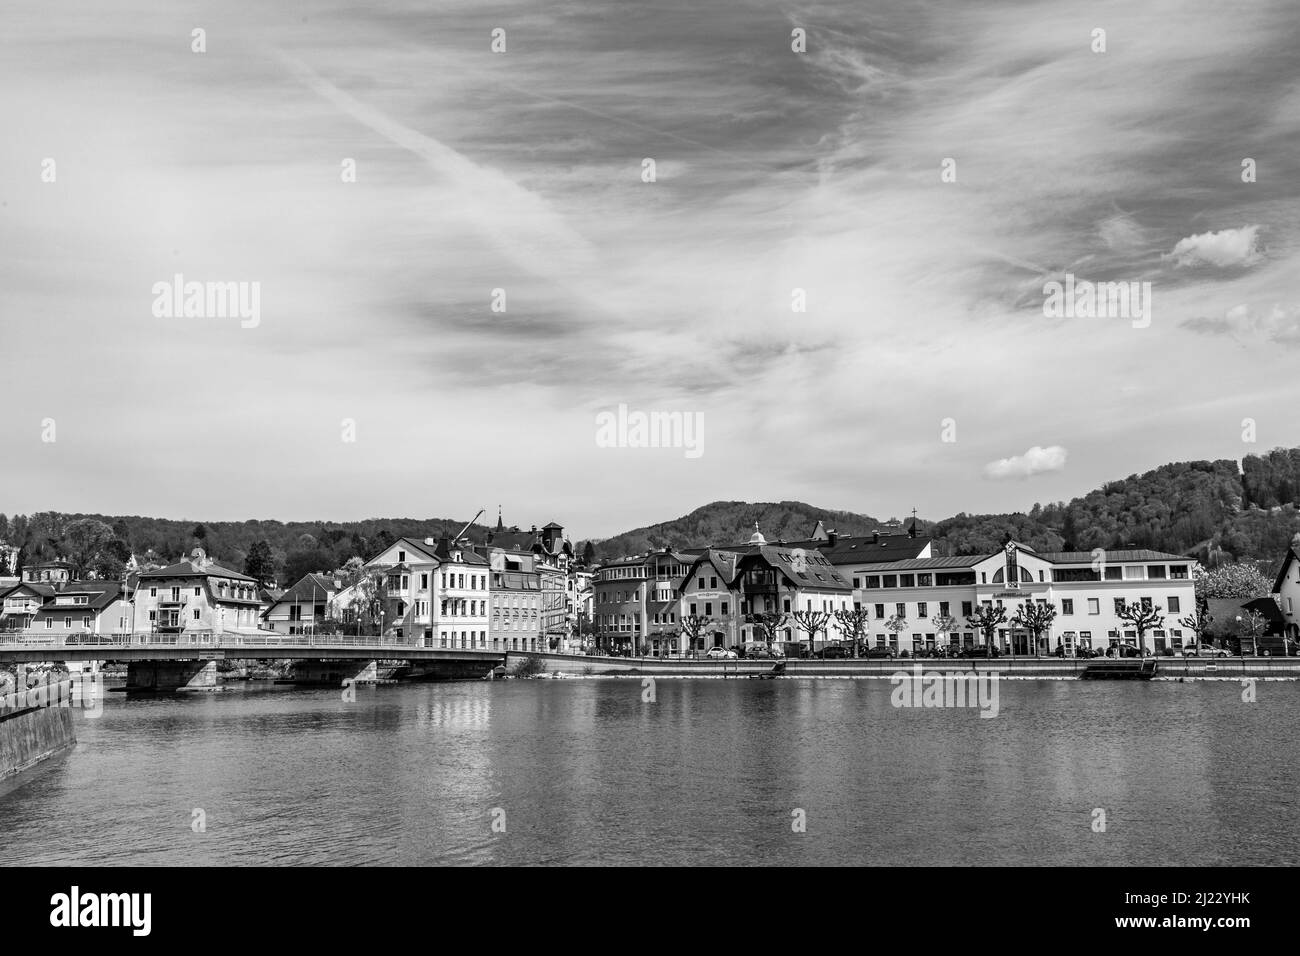 Gmunden. Autriche - 22 avril 2015 : vue sur la ville de Gmunden, Autriche. Gmunden était un centre important dans le salzkammergut et de riches marchands vivaient Banque D'Images